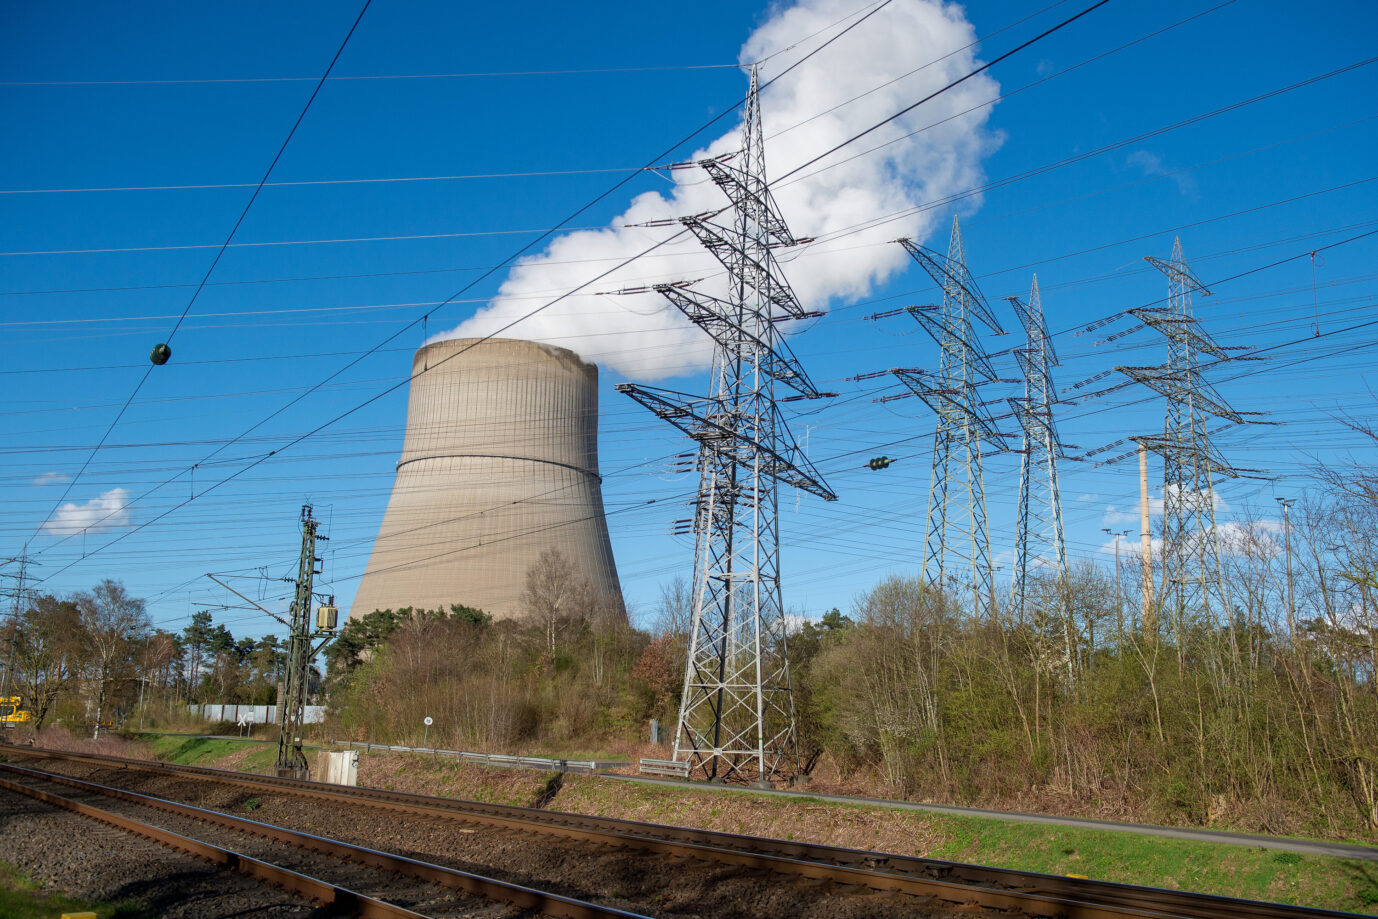 Ein Bild des Atomkraftwerkes in Lingen, welches am 15. April vom Netz ging. Das Statistische Bundesamt macht den Atomausstieg für den Einbruch der Stromversorgung mitverantwortlich. (Themenbild, Symbolbild) 11.04.2023 Atomkraft ist Stromproduktion